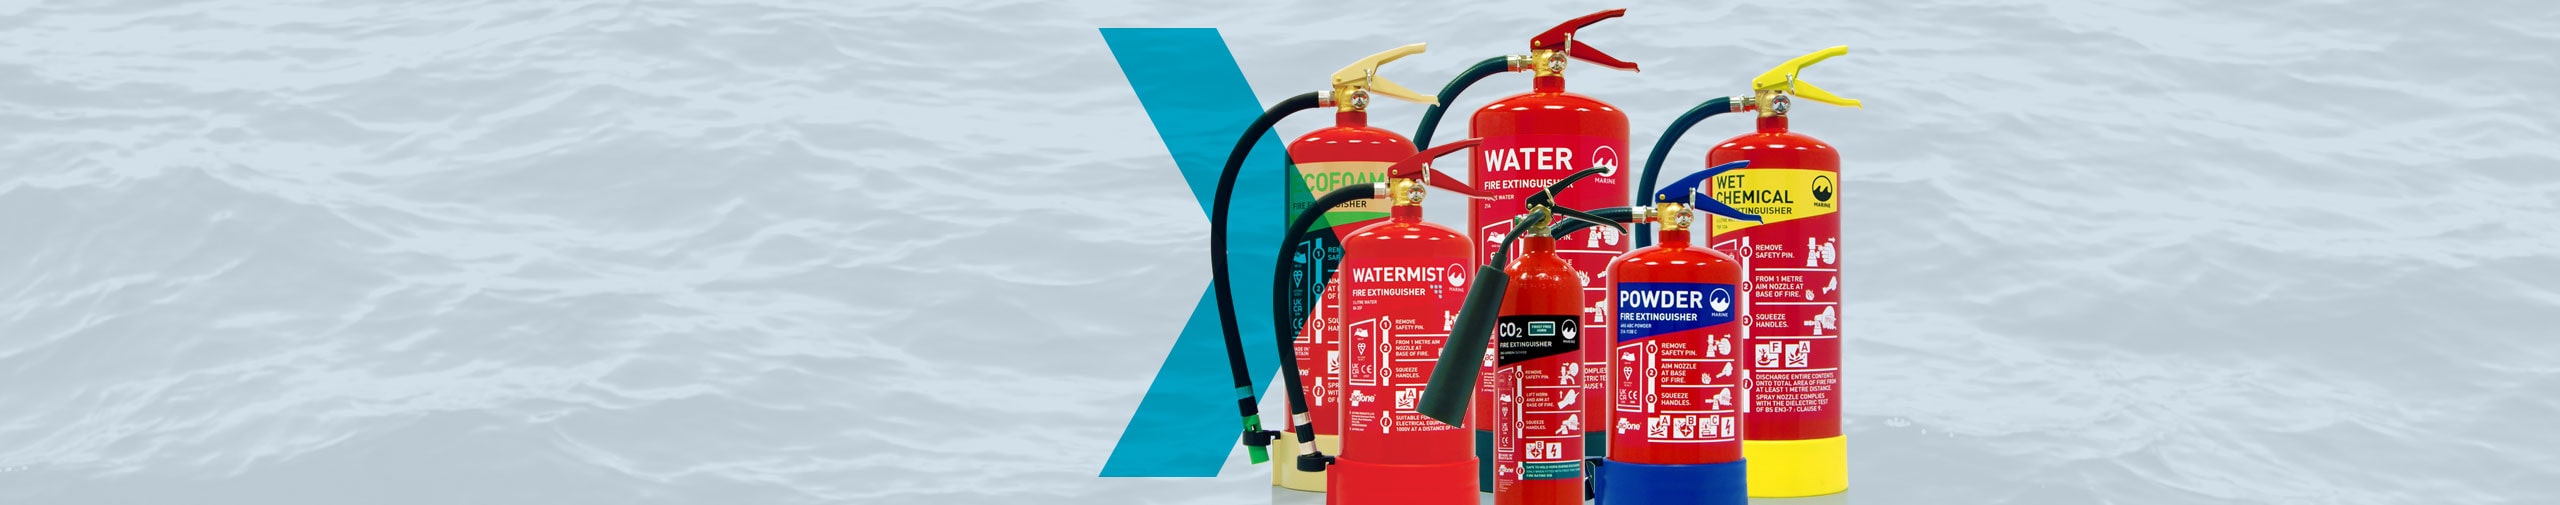 Jactone Marine Fire Extinguishers